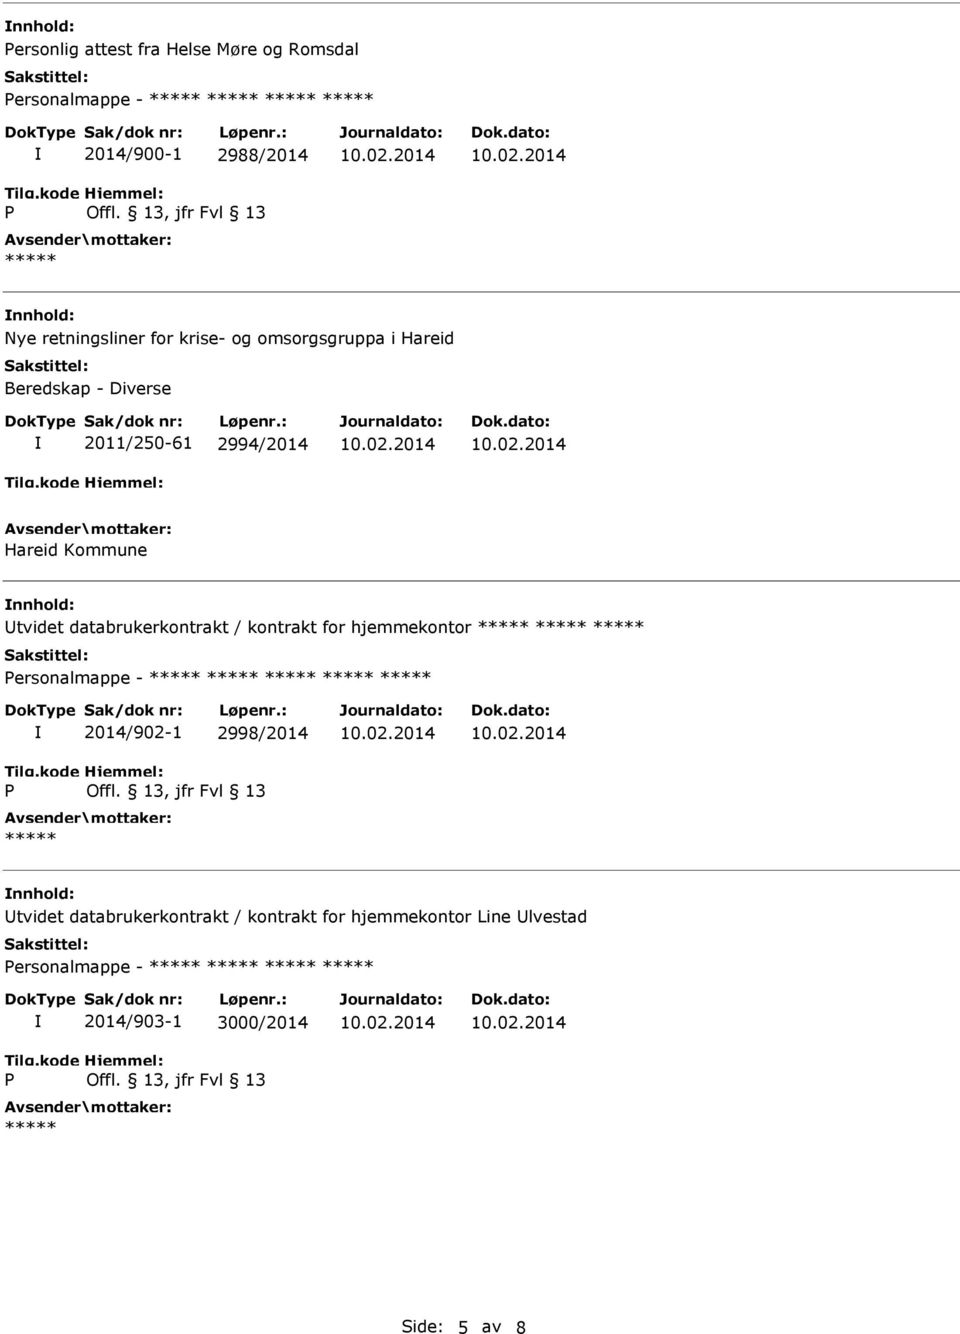 tvidet databrukerkontrakt / kontrakt for hjemmekontor ersonalmappe - 2014/902-1 2998/2014 tvidet